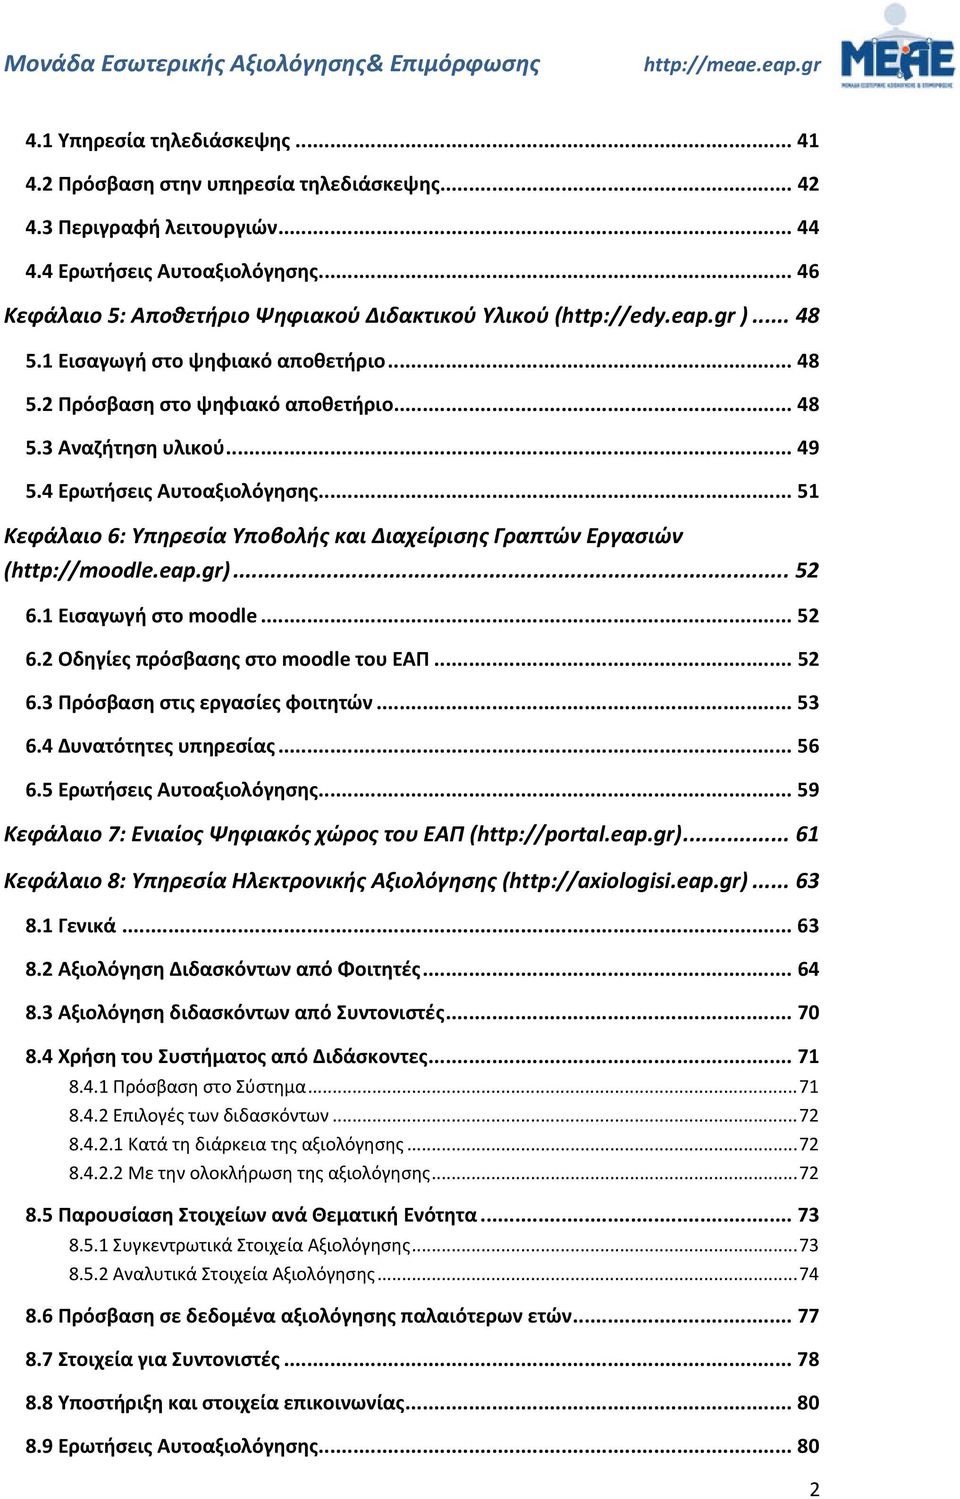 4 Ερωτήσεις Αυτοαξιολόγησης... 51 Κεφάλαιο 6: Υπηρεσία Υποβολής και Διαχείρισης Γραπτών Εργασιών (http://moodle.eap.gr)... 52 6.1 Εισαγωγή στο moodle... 52 6.2 Οδηγίες πρόσβασης στο moodle του ΕΑΠ.